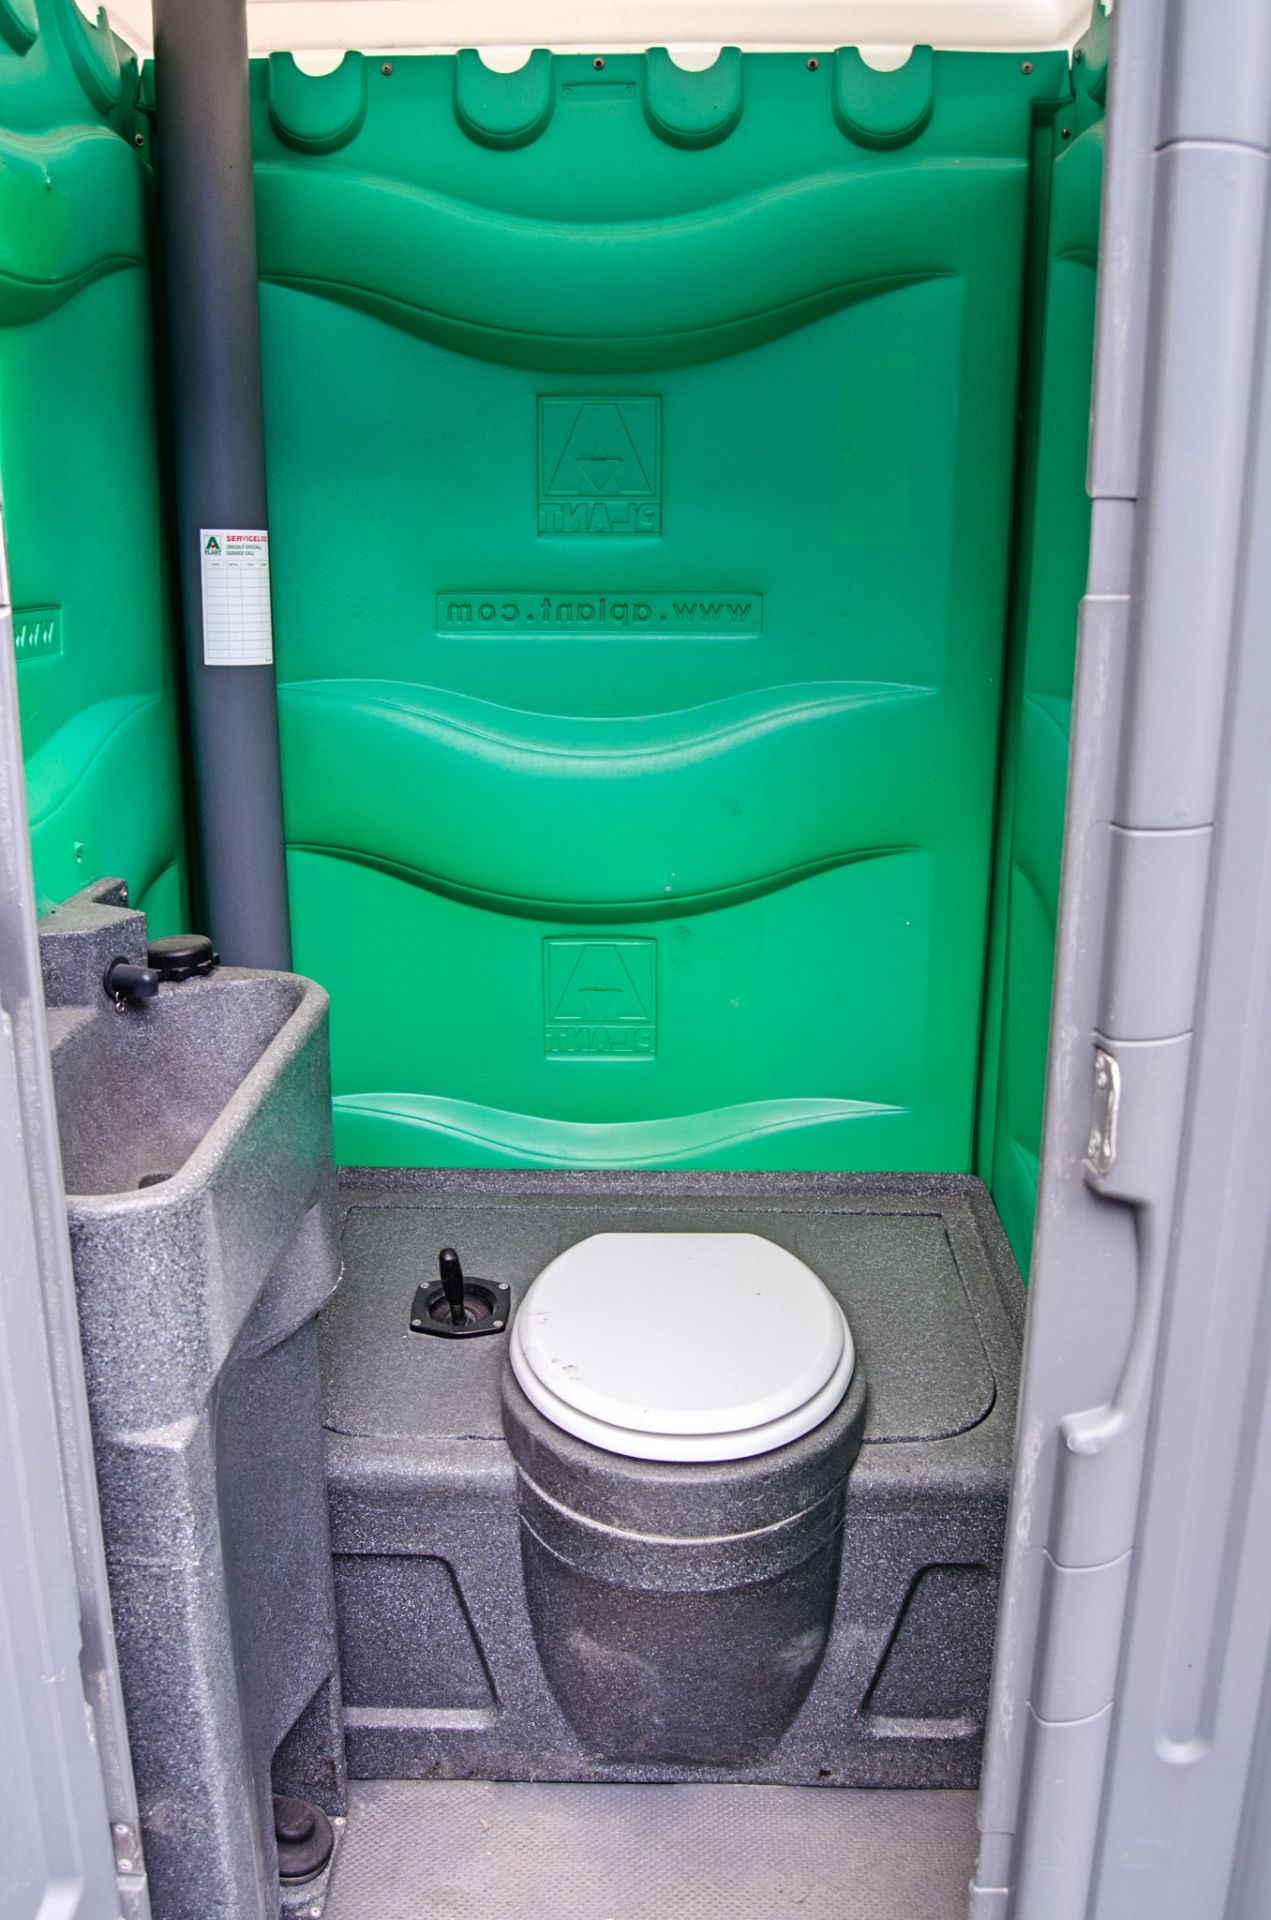 Plastic portable toilet unit A447229 - Image 3 of 3